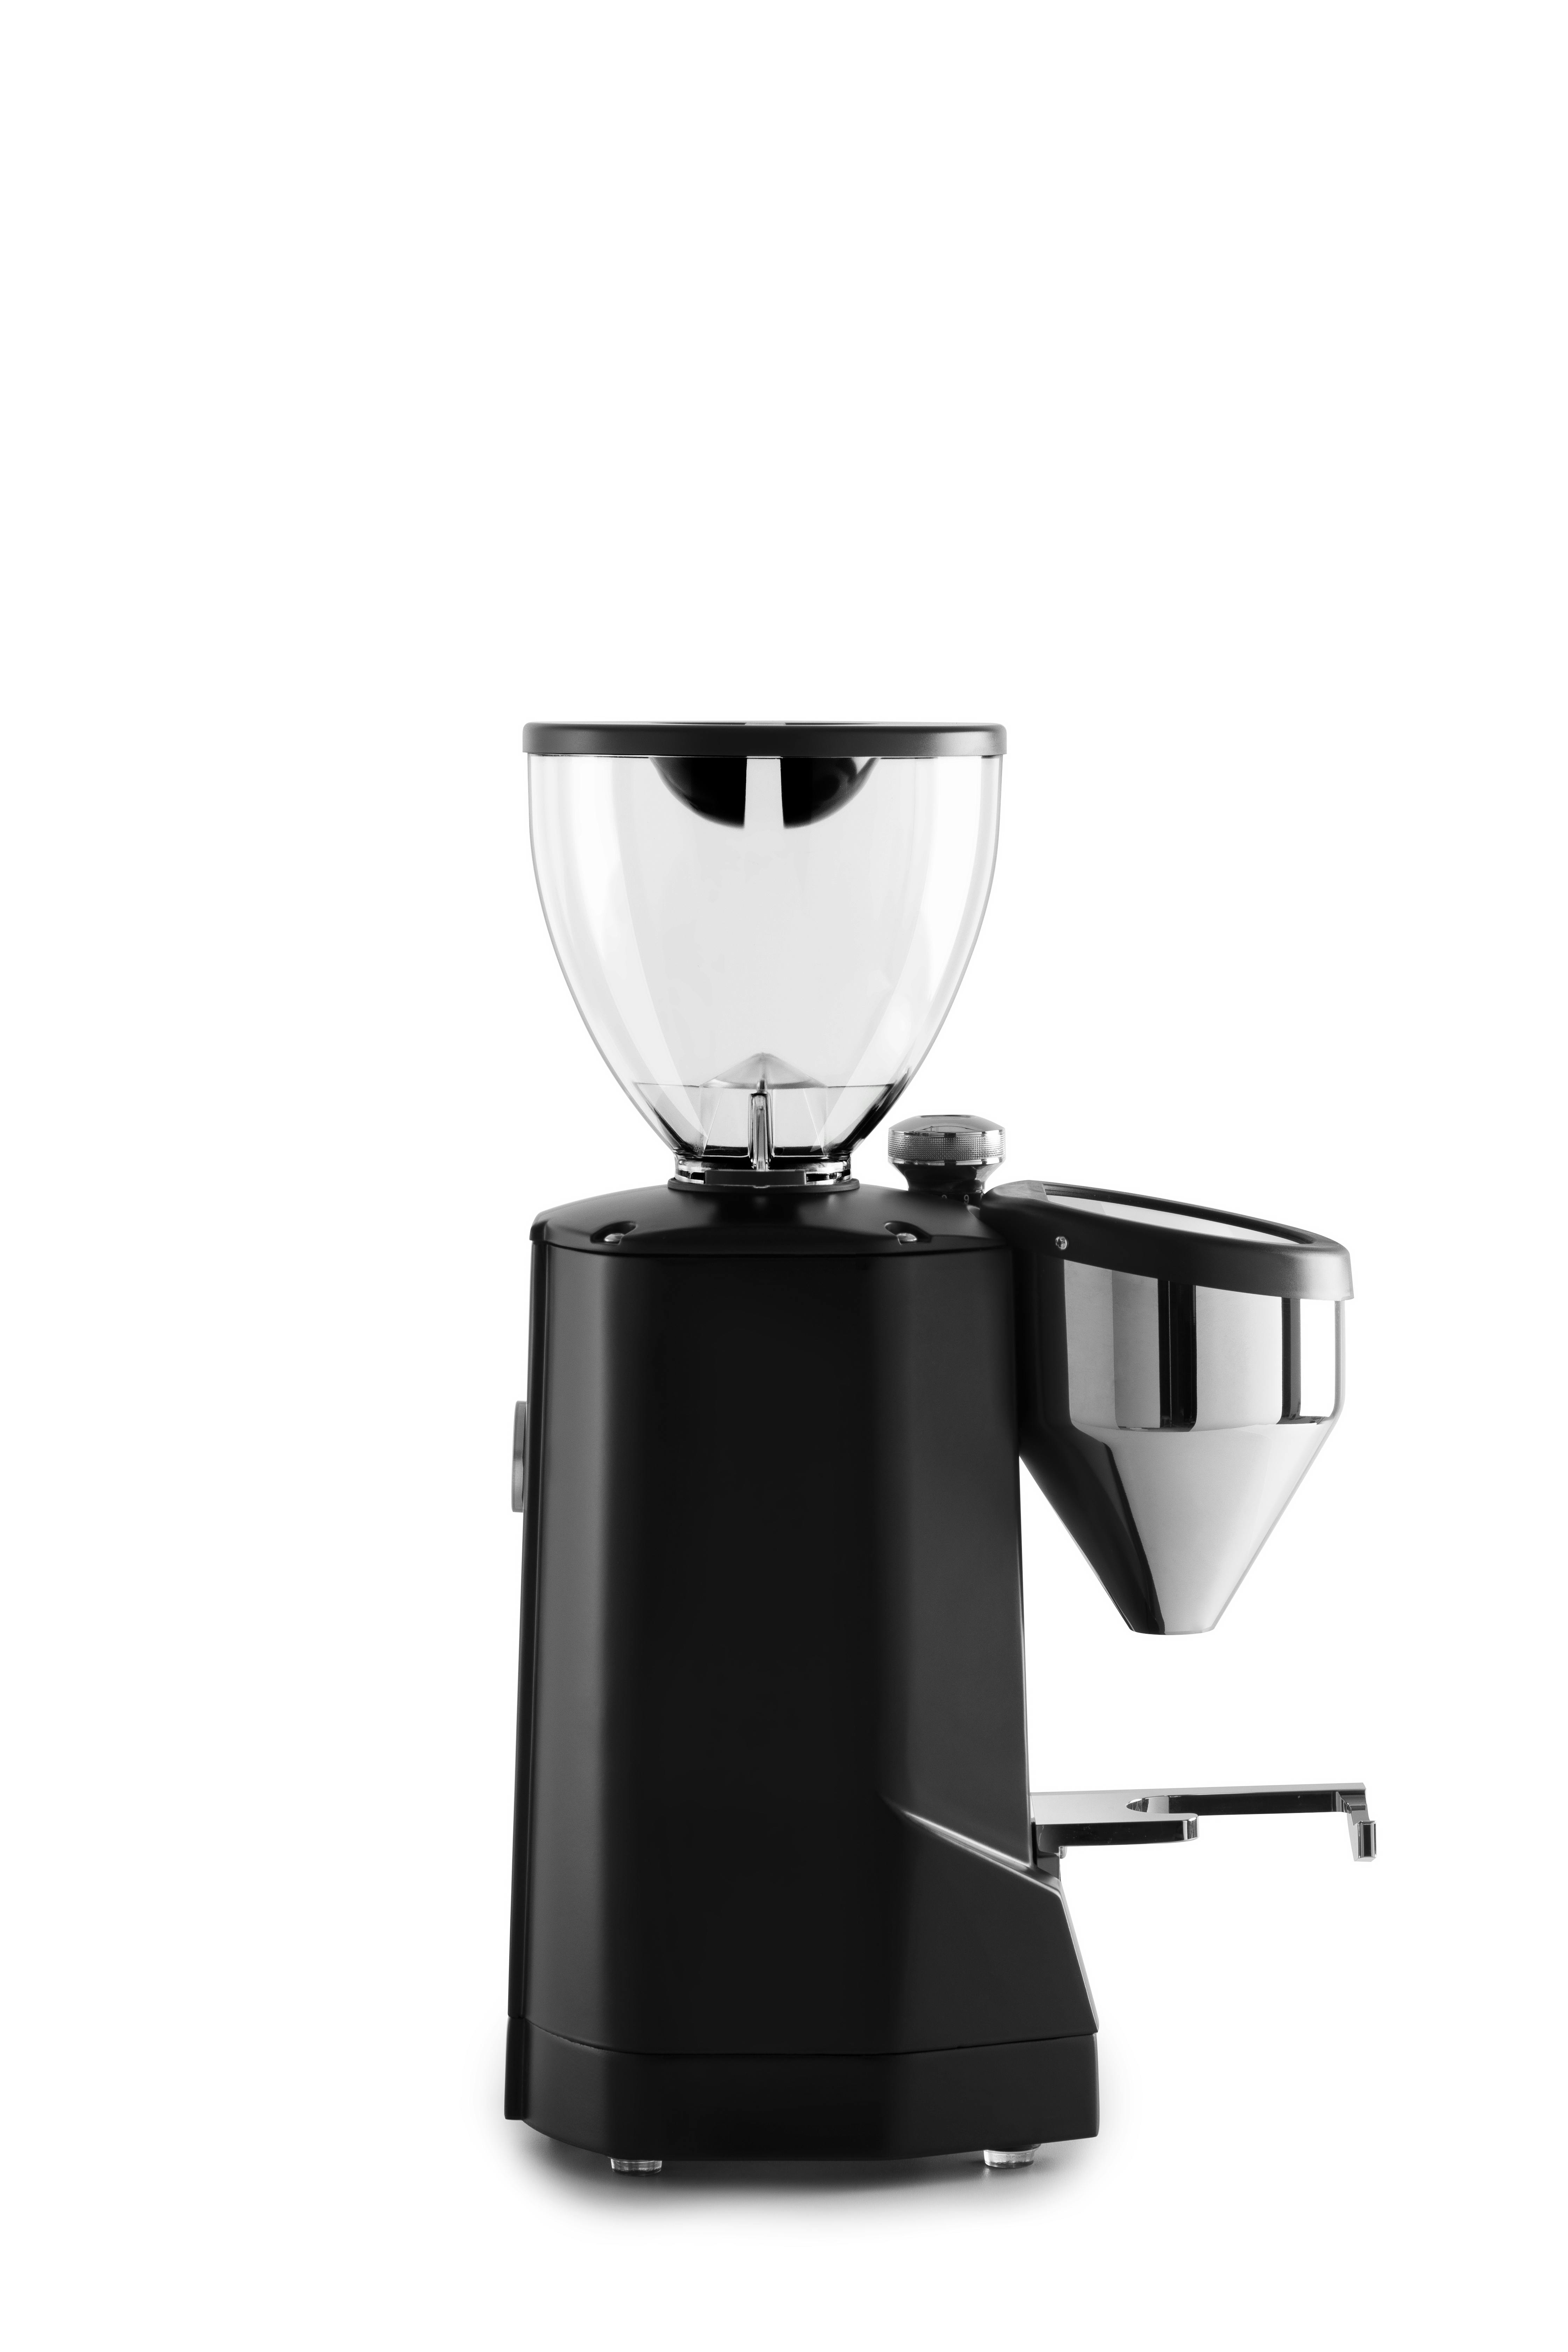 Rocket Espresso Super Fausto Commercial Espresso Grinder